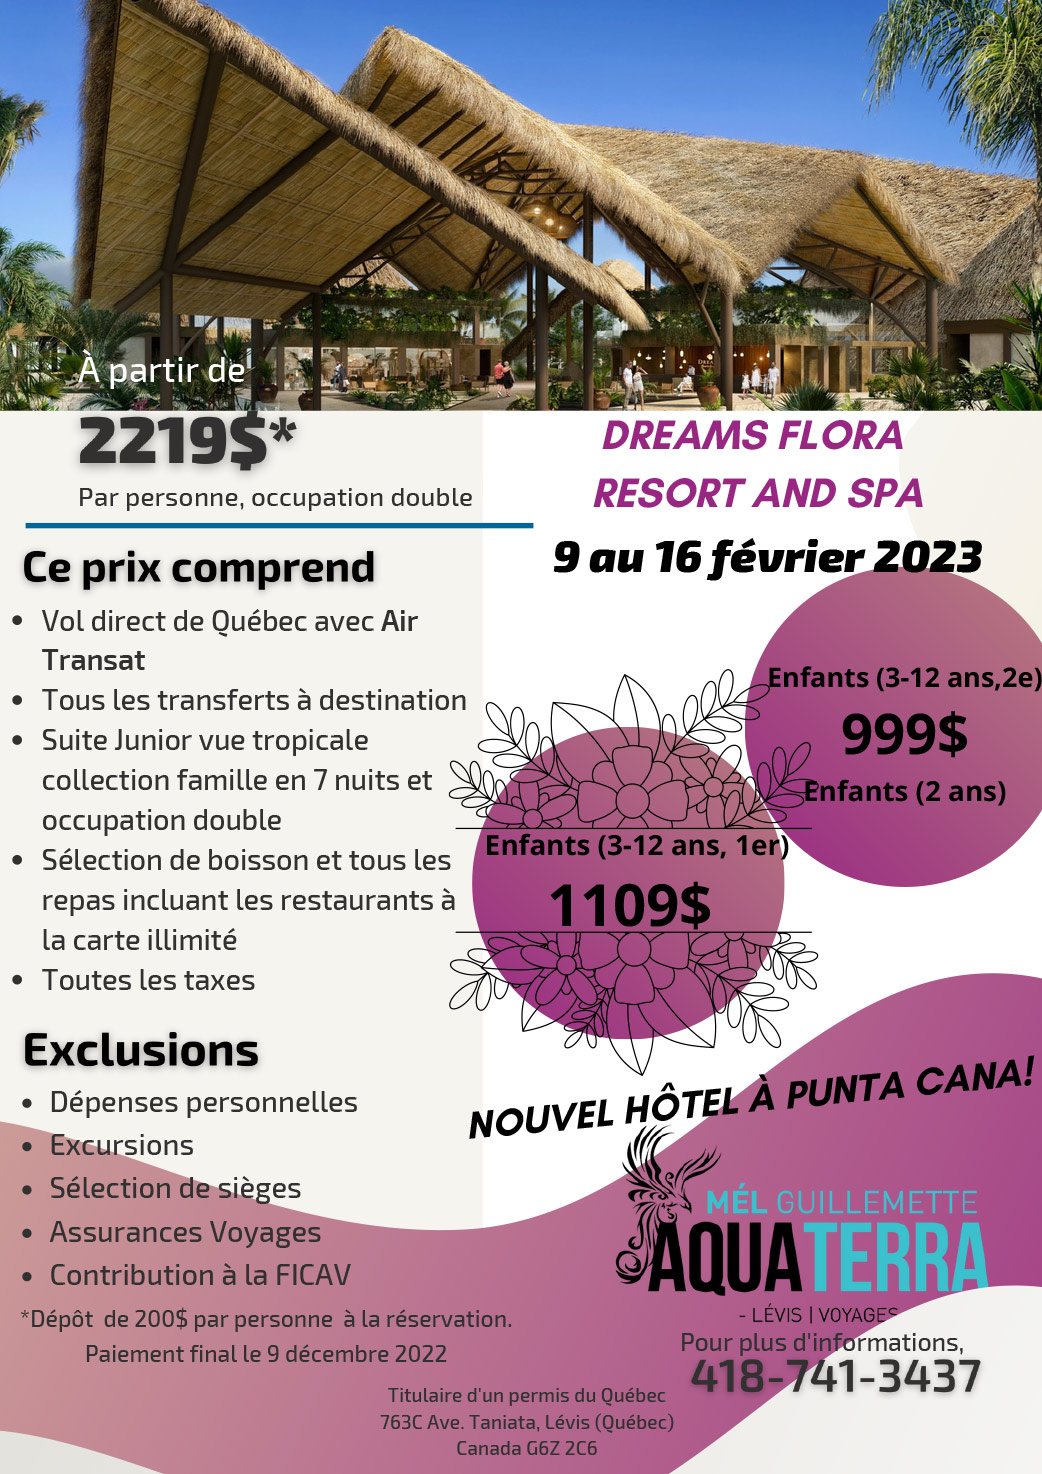 Voyages au Dreams Flora Resort and Spa du 9 au 16 février 2023